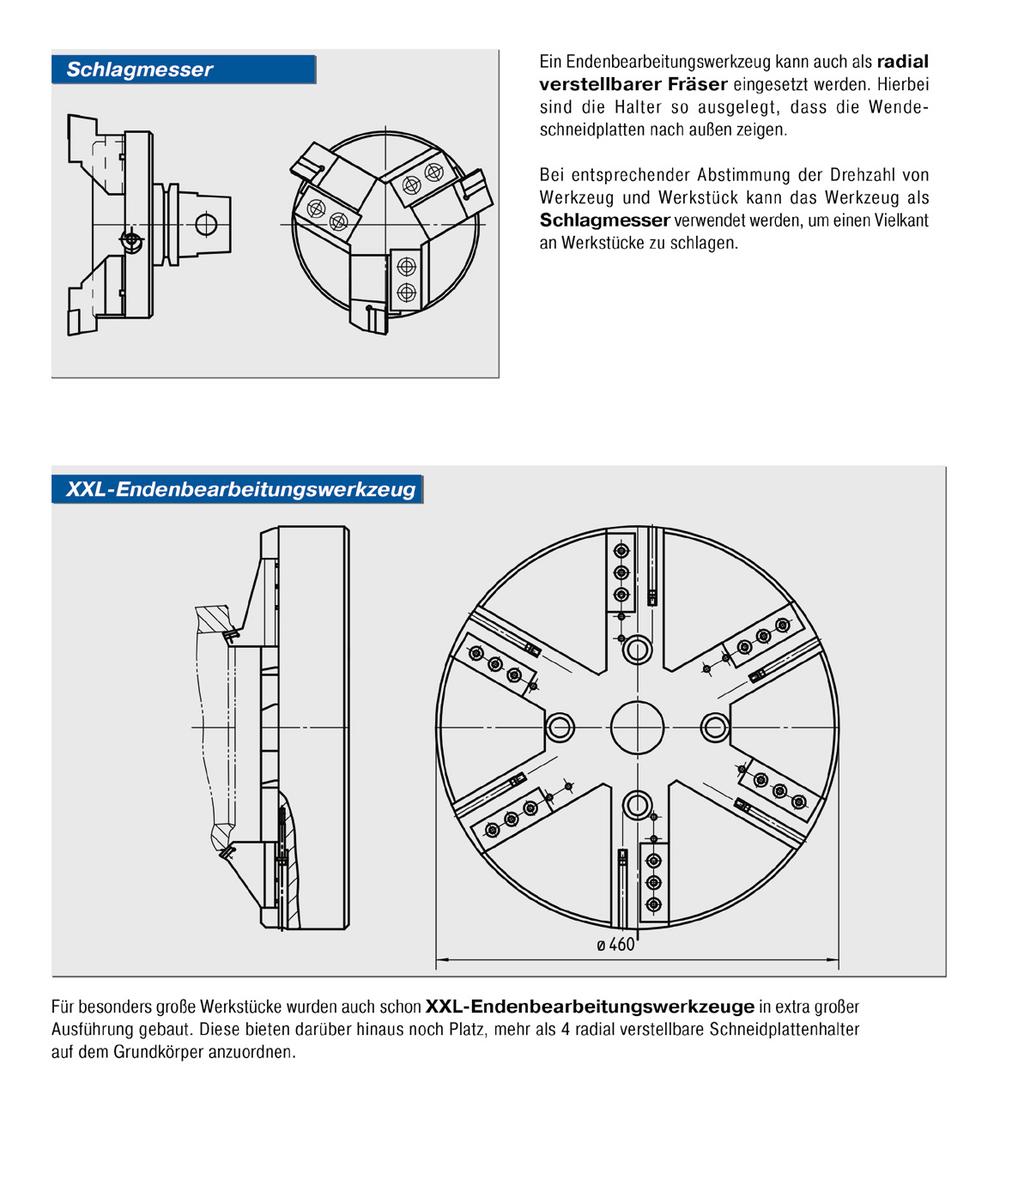 Sonderwerkzeuge Faxanfrage Ein Endenbearbeitungswerkzeug kann auch als radial verstellbarer Fräser eingesetzt werden.